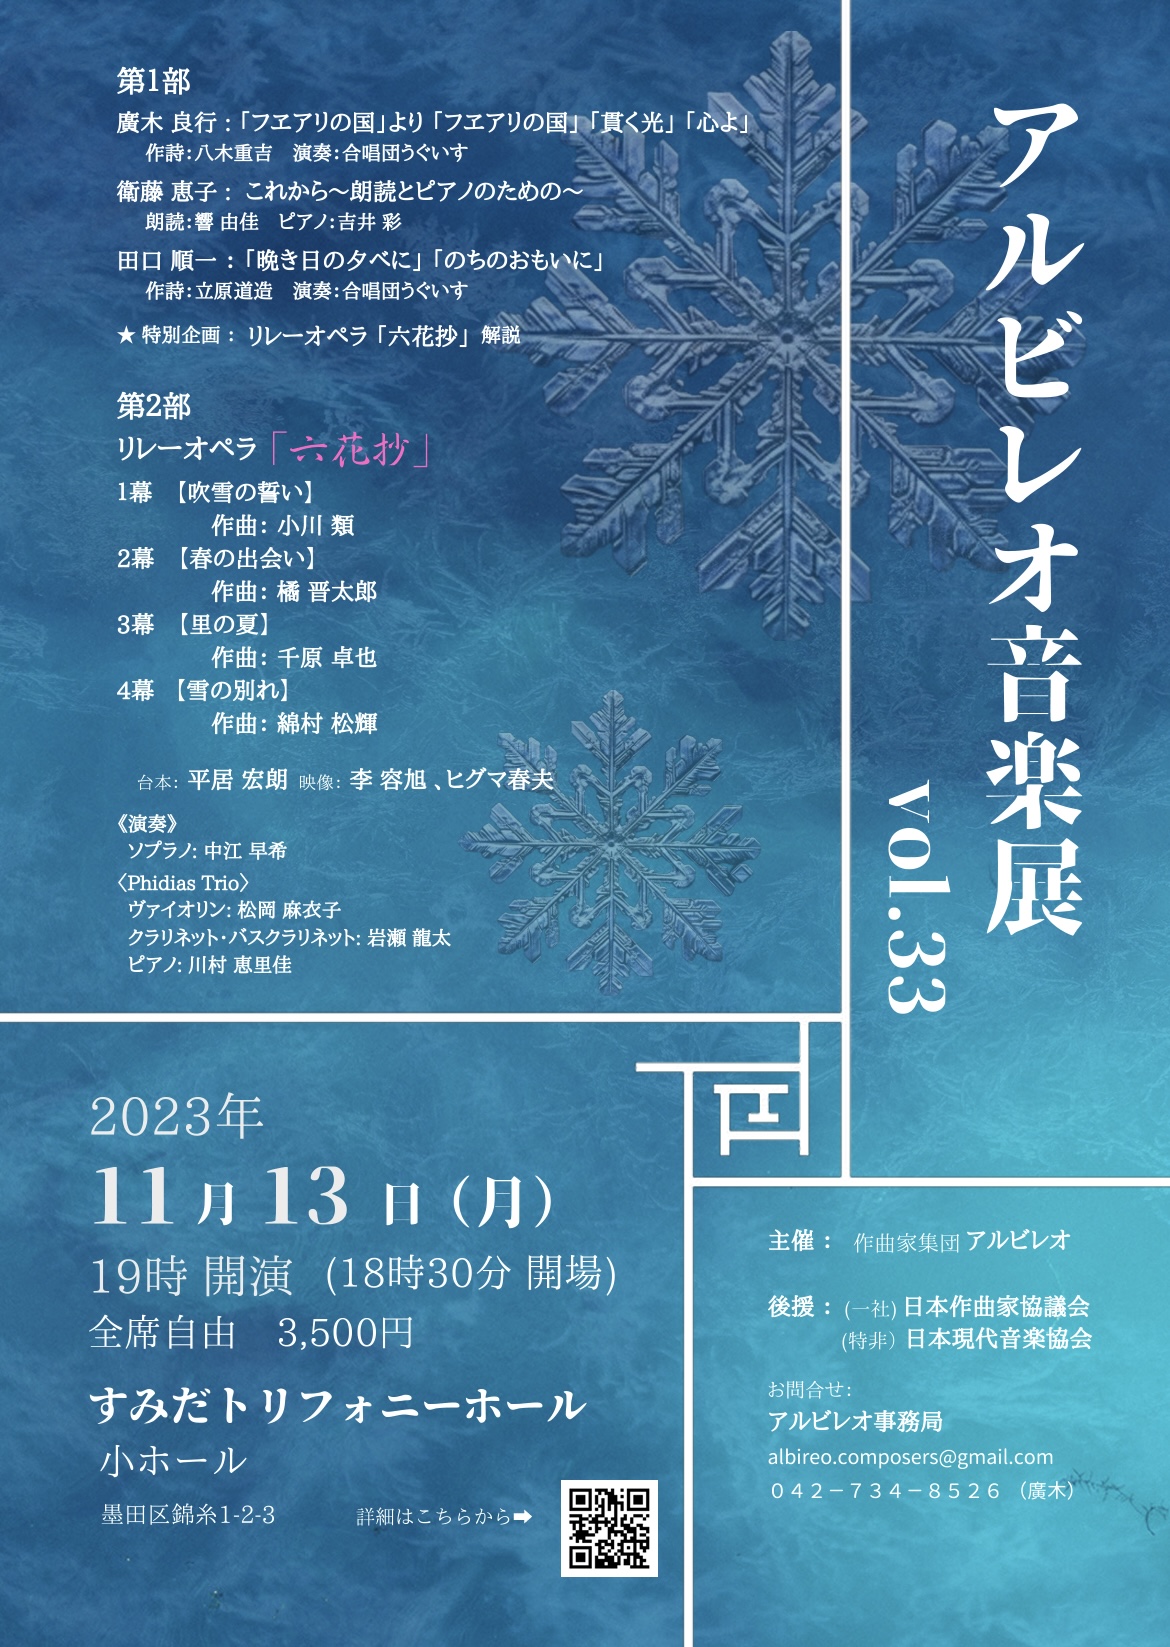 23/11/14 新作作品の演奏会アルビレオ音楽展へ行ってきました。 | 氷見 